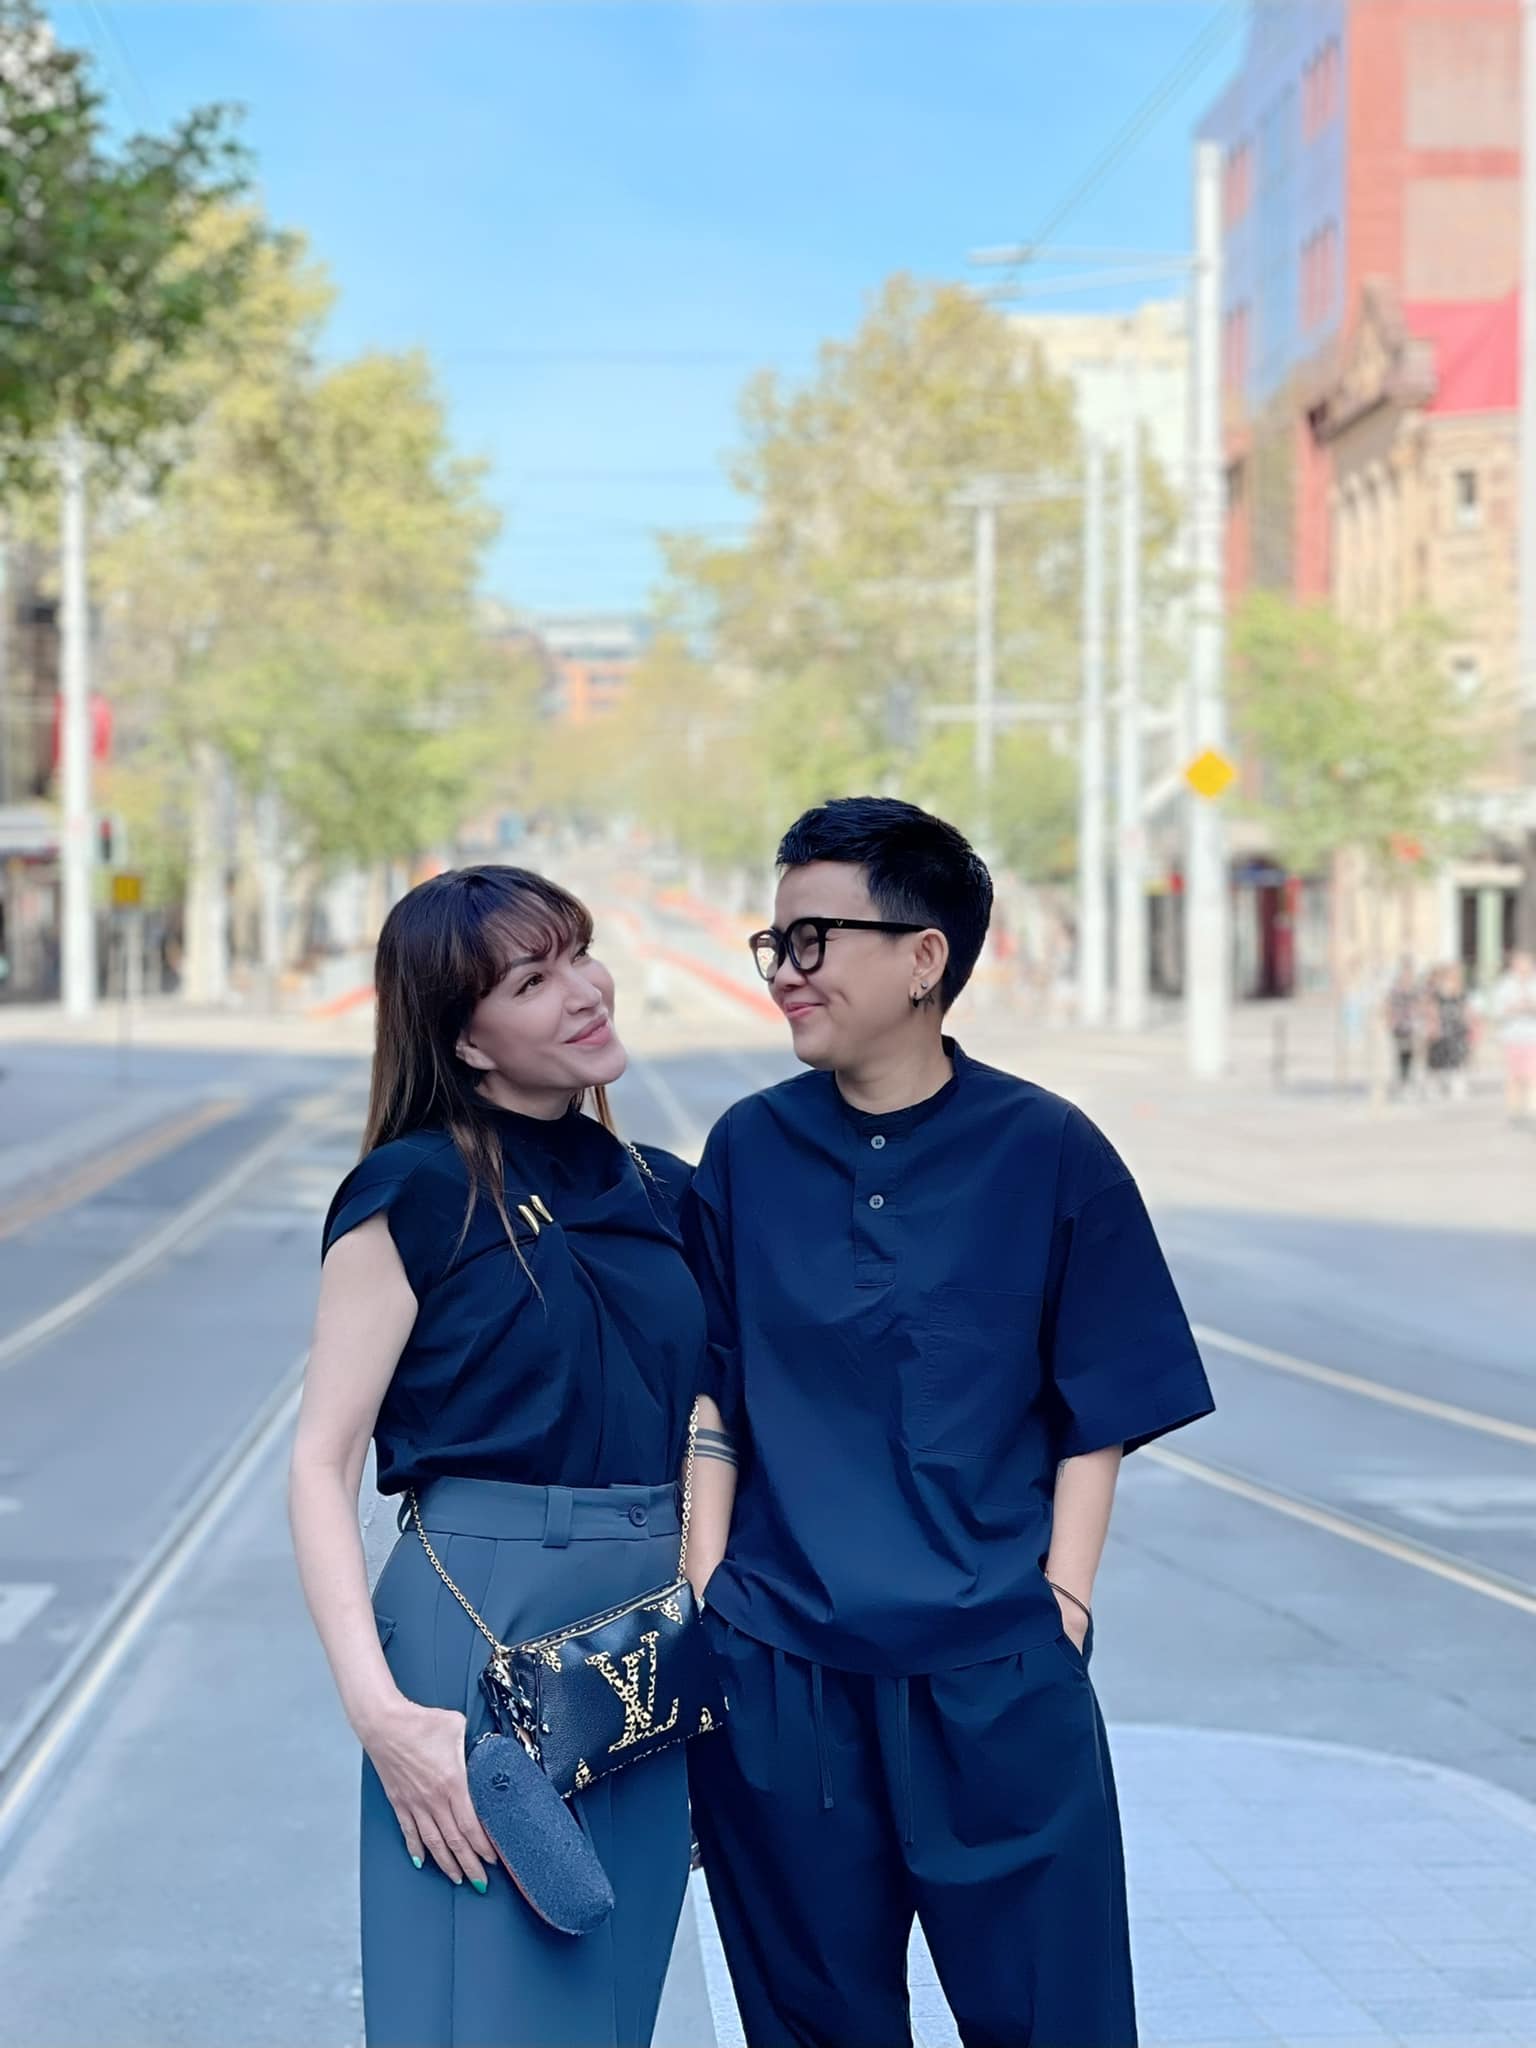 Thanh Hà và Phương Uyên đã đăng tải ảnh cưới độc đáo trên mạng xã hội. Hình ảnh cặp đôi trong ngày trọng đại đã thu hút sự chú ý của rất nhiều người. Chụp bởi các nhiếp ảnh gia chuyên nghiệp, lộ thiệp cưới của hai người đã thành một tác phẩm nghệ thuật đẹp đẽ.